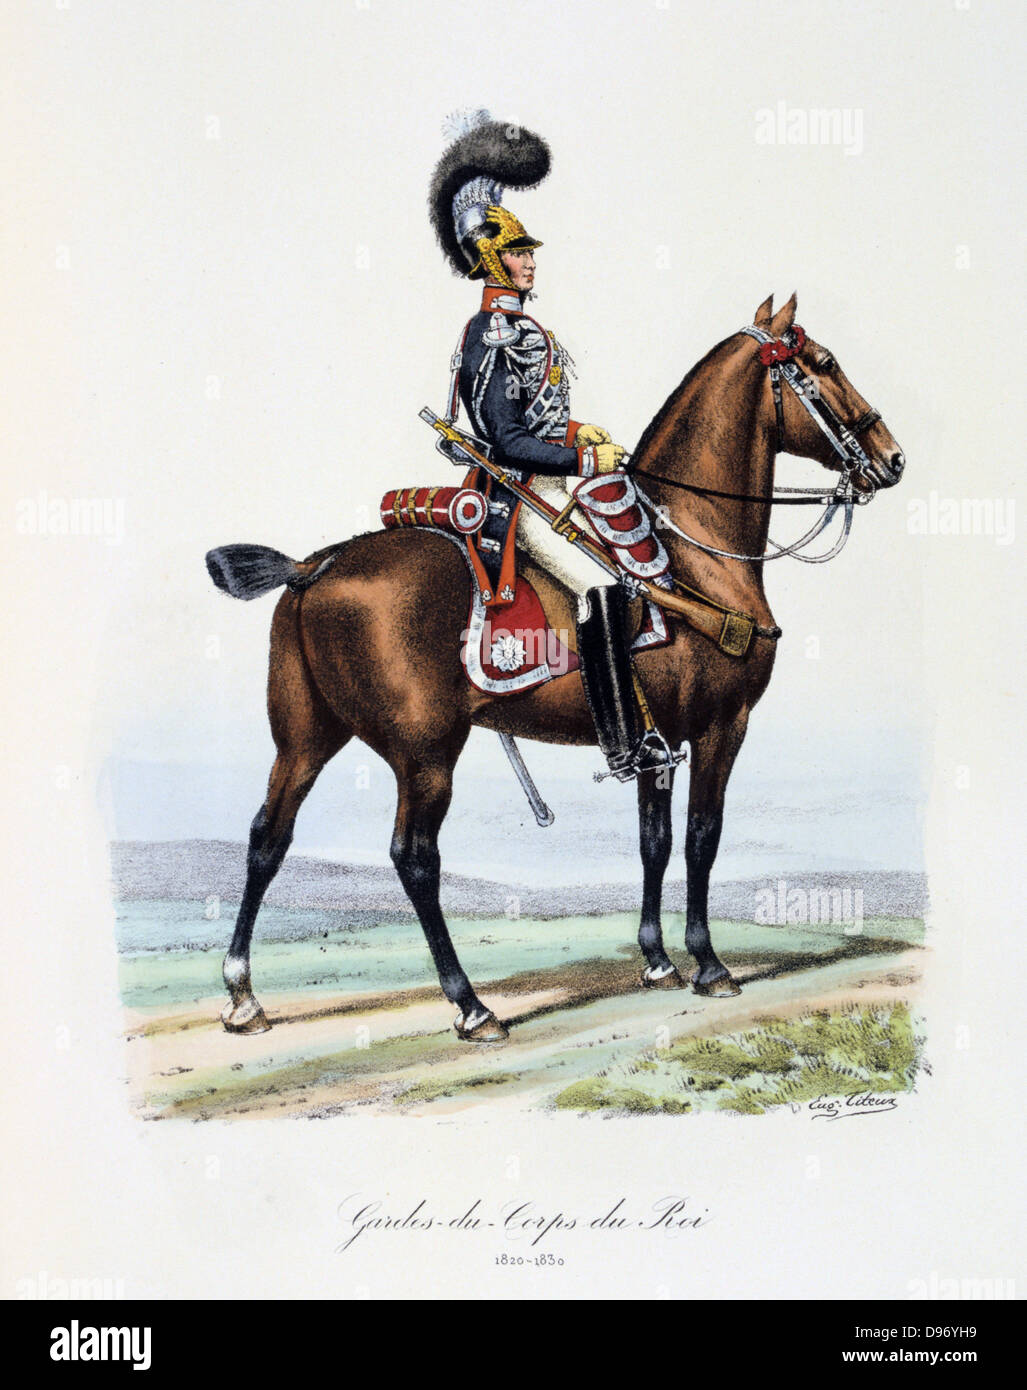 Mounted member of the King's guard, 1820-1830. From 'Histoire de la maison militaire du Roi de 1814 a 1830' by Eugene Titeux, Paris, 1890. Stock Photo